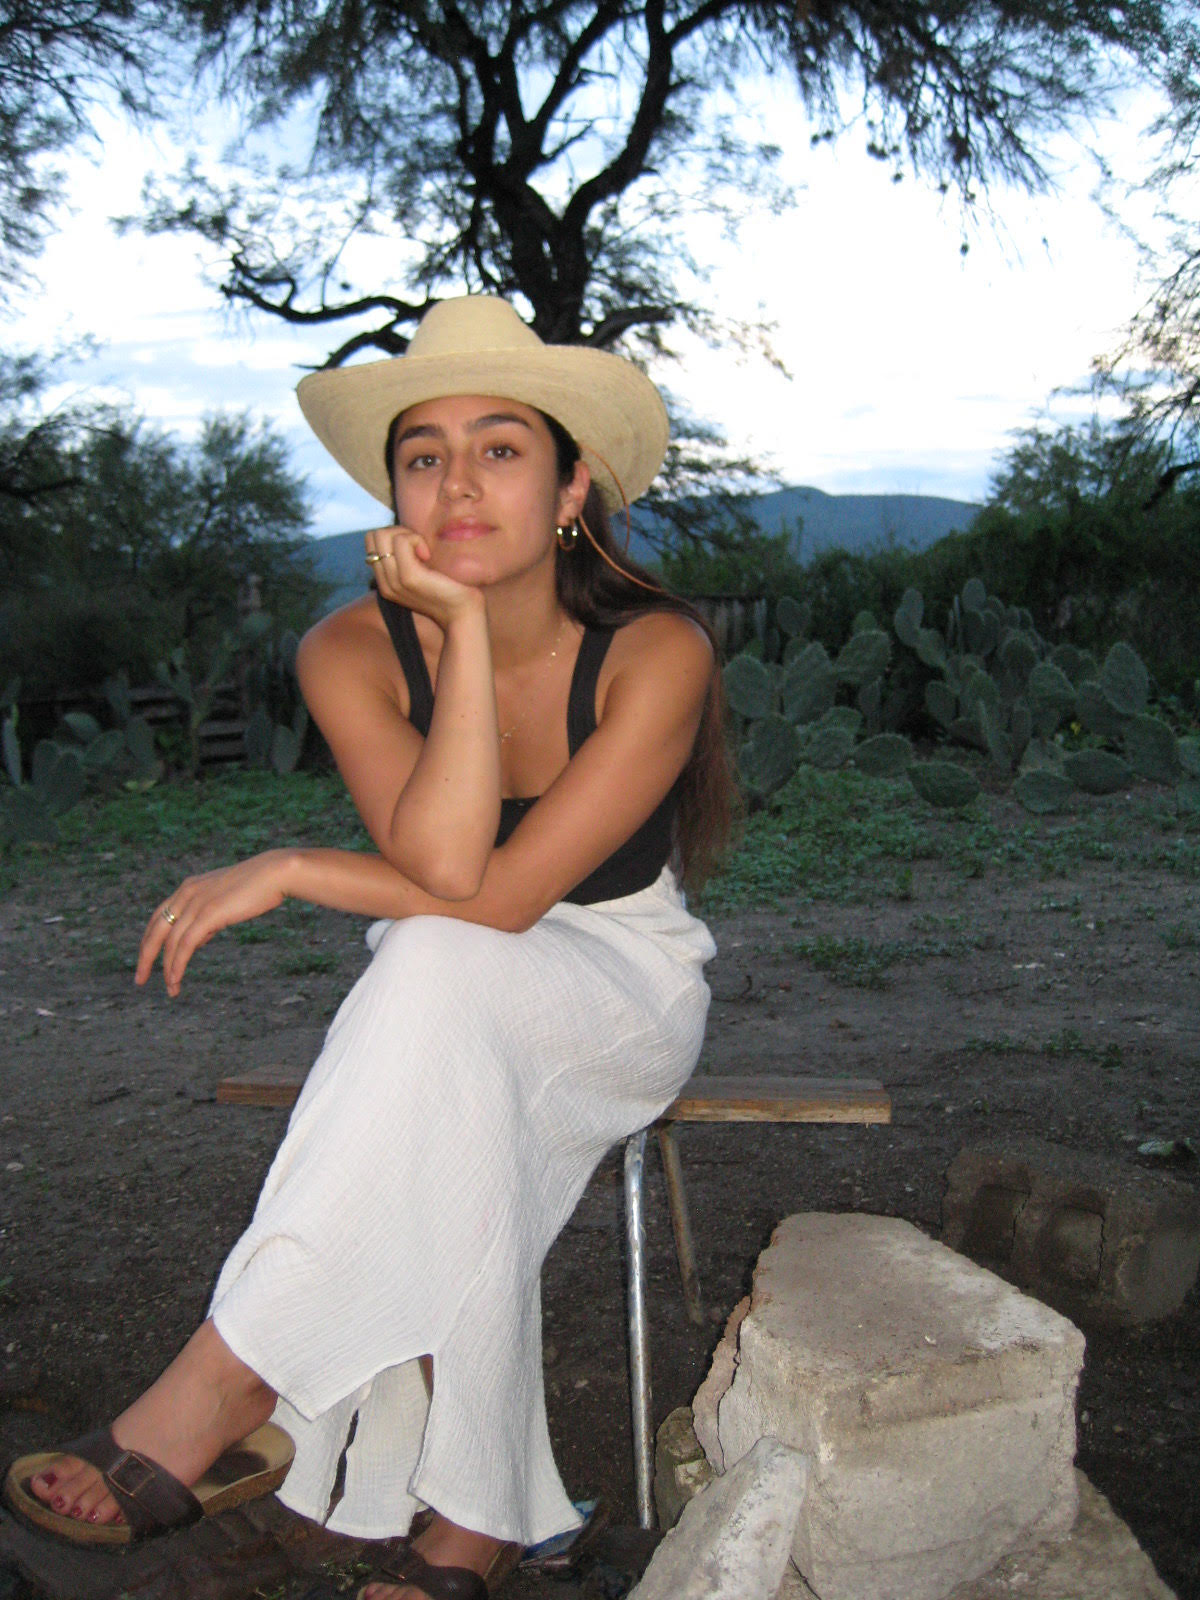 MEET THE MAKER: Karissa Huerta of Chi Chi Ceramicas